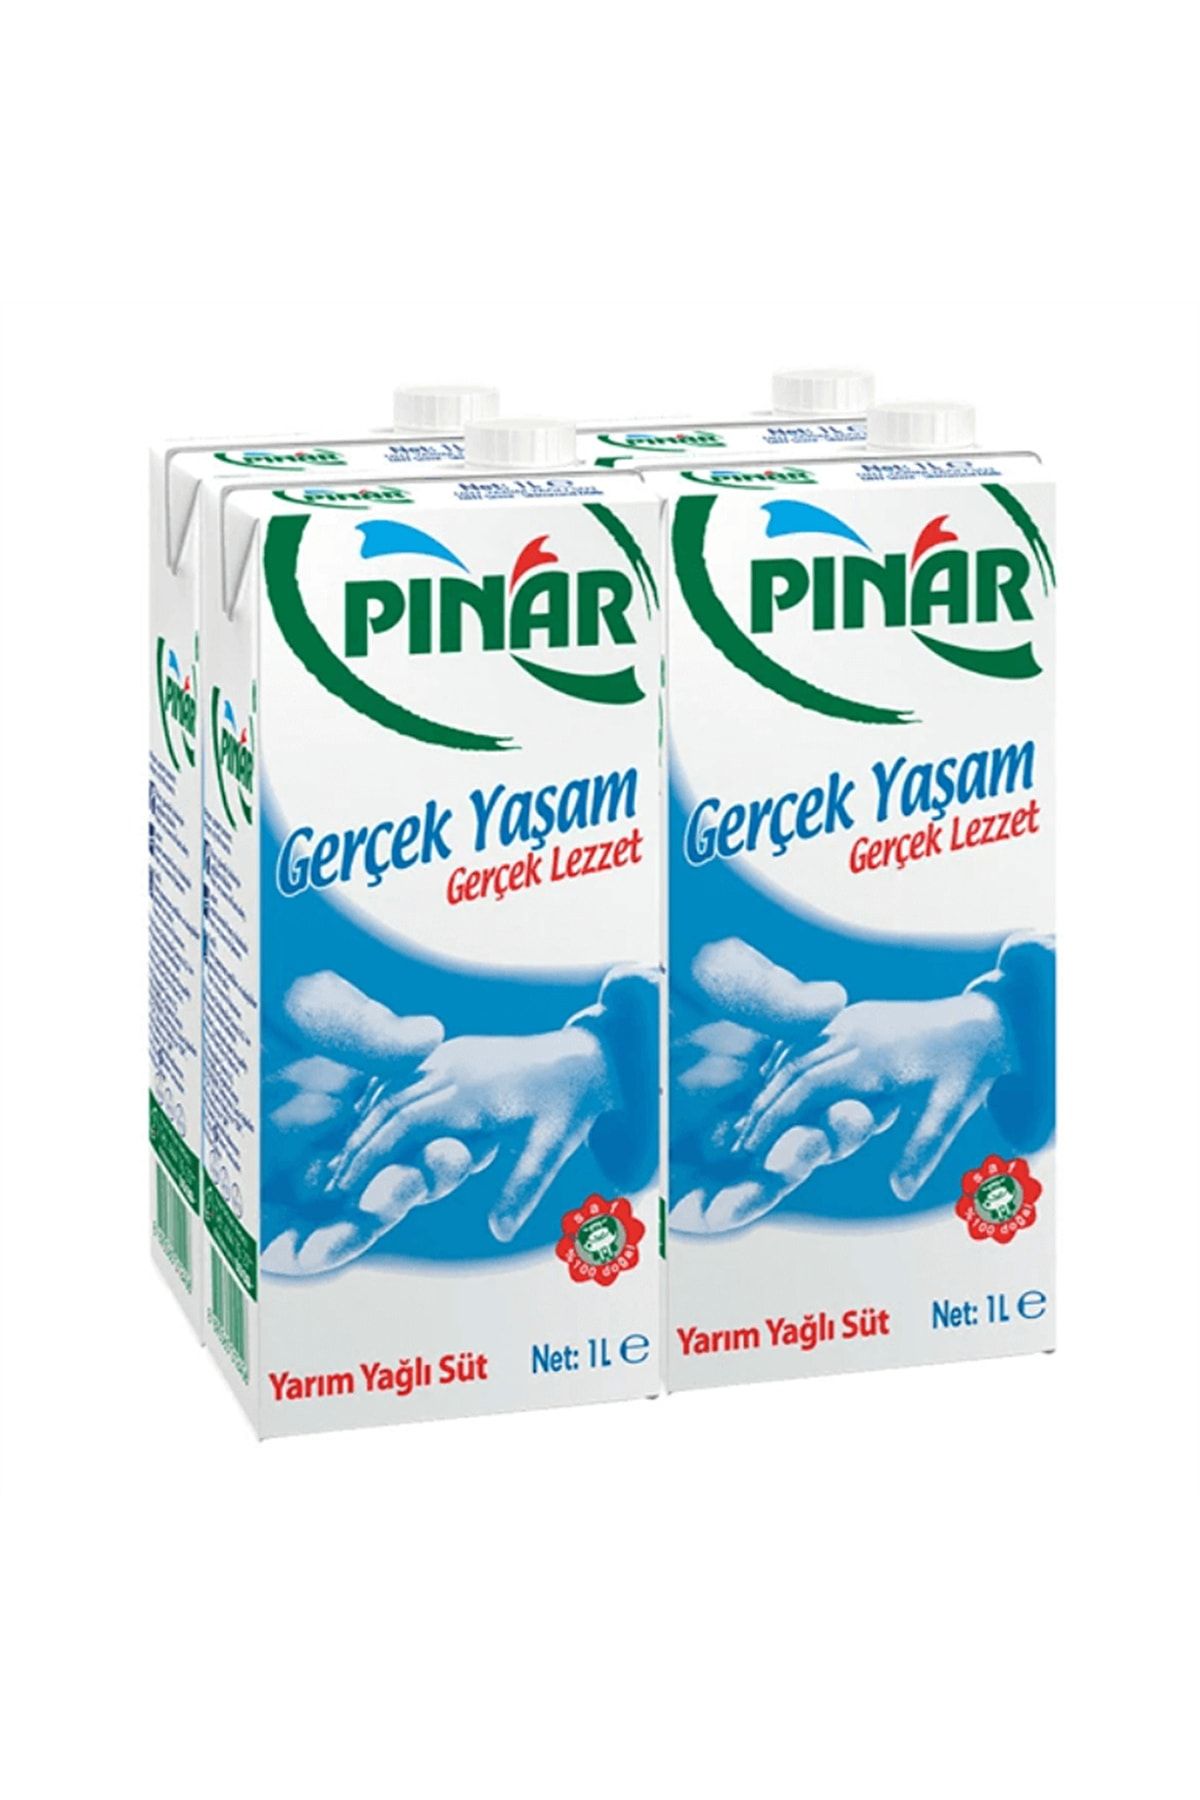 GROS Pınar Yarım Yağlı Süt 4x1 L